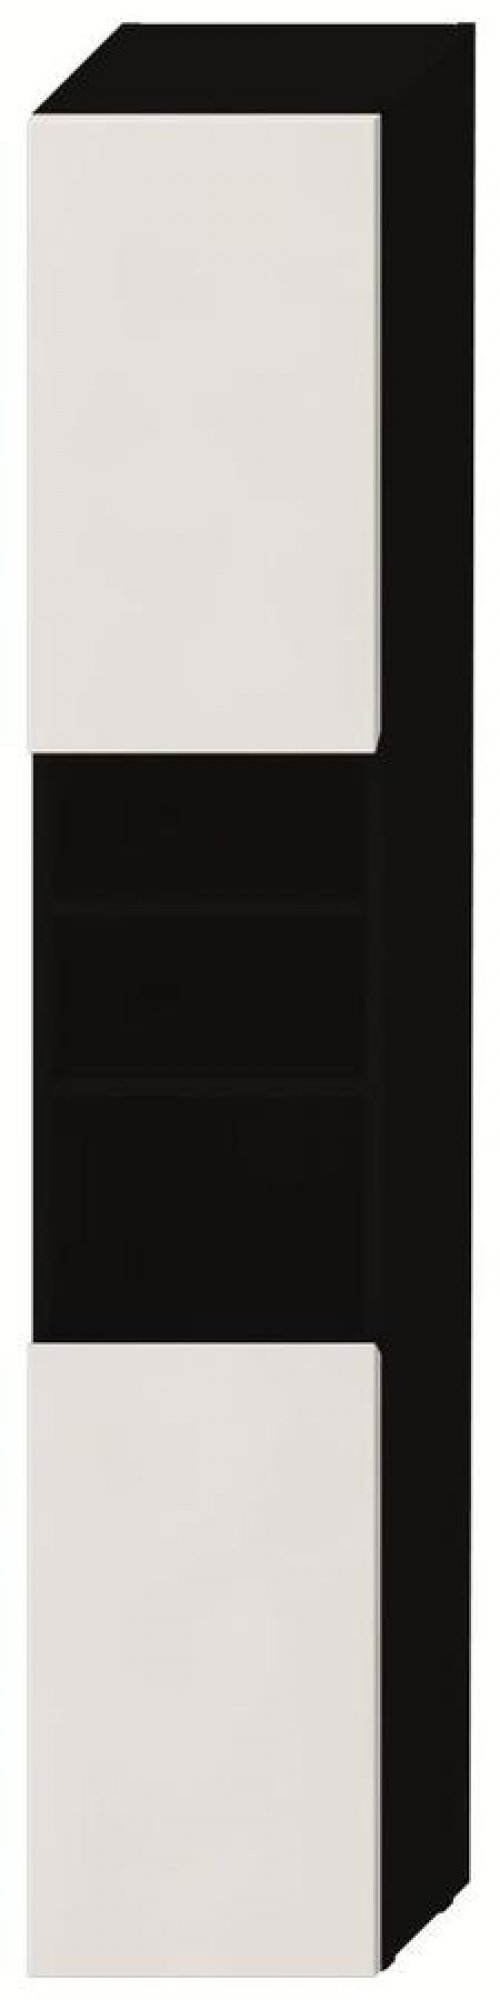 Vysoká skříňka 170 x 32 cm Jika LYRA levé dveře, tmavý dub/bílý lak preview